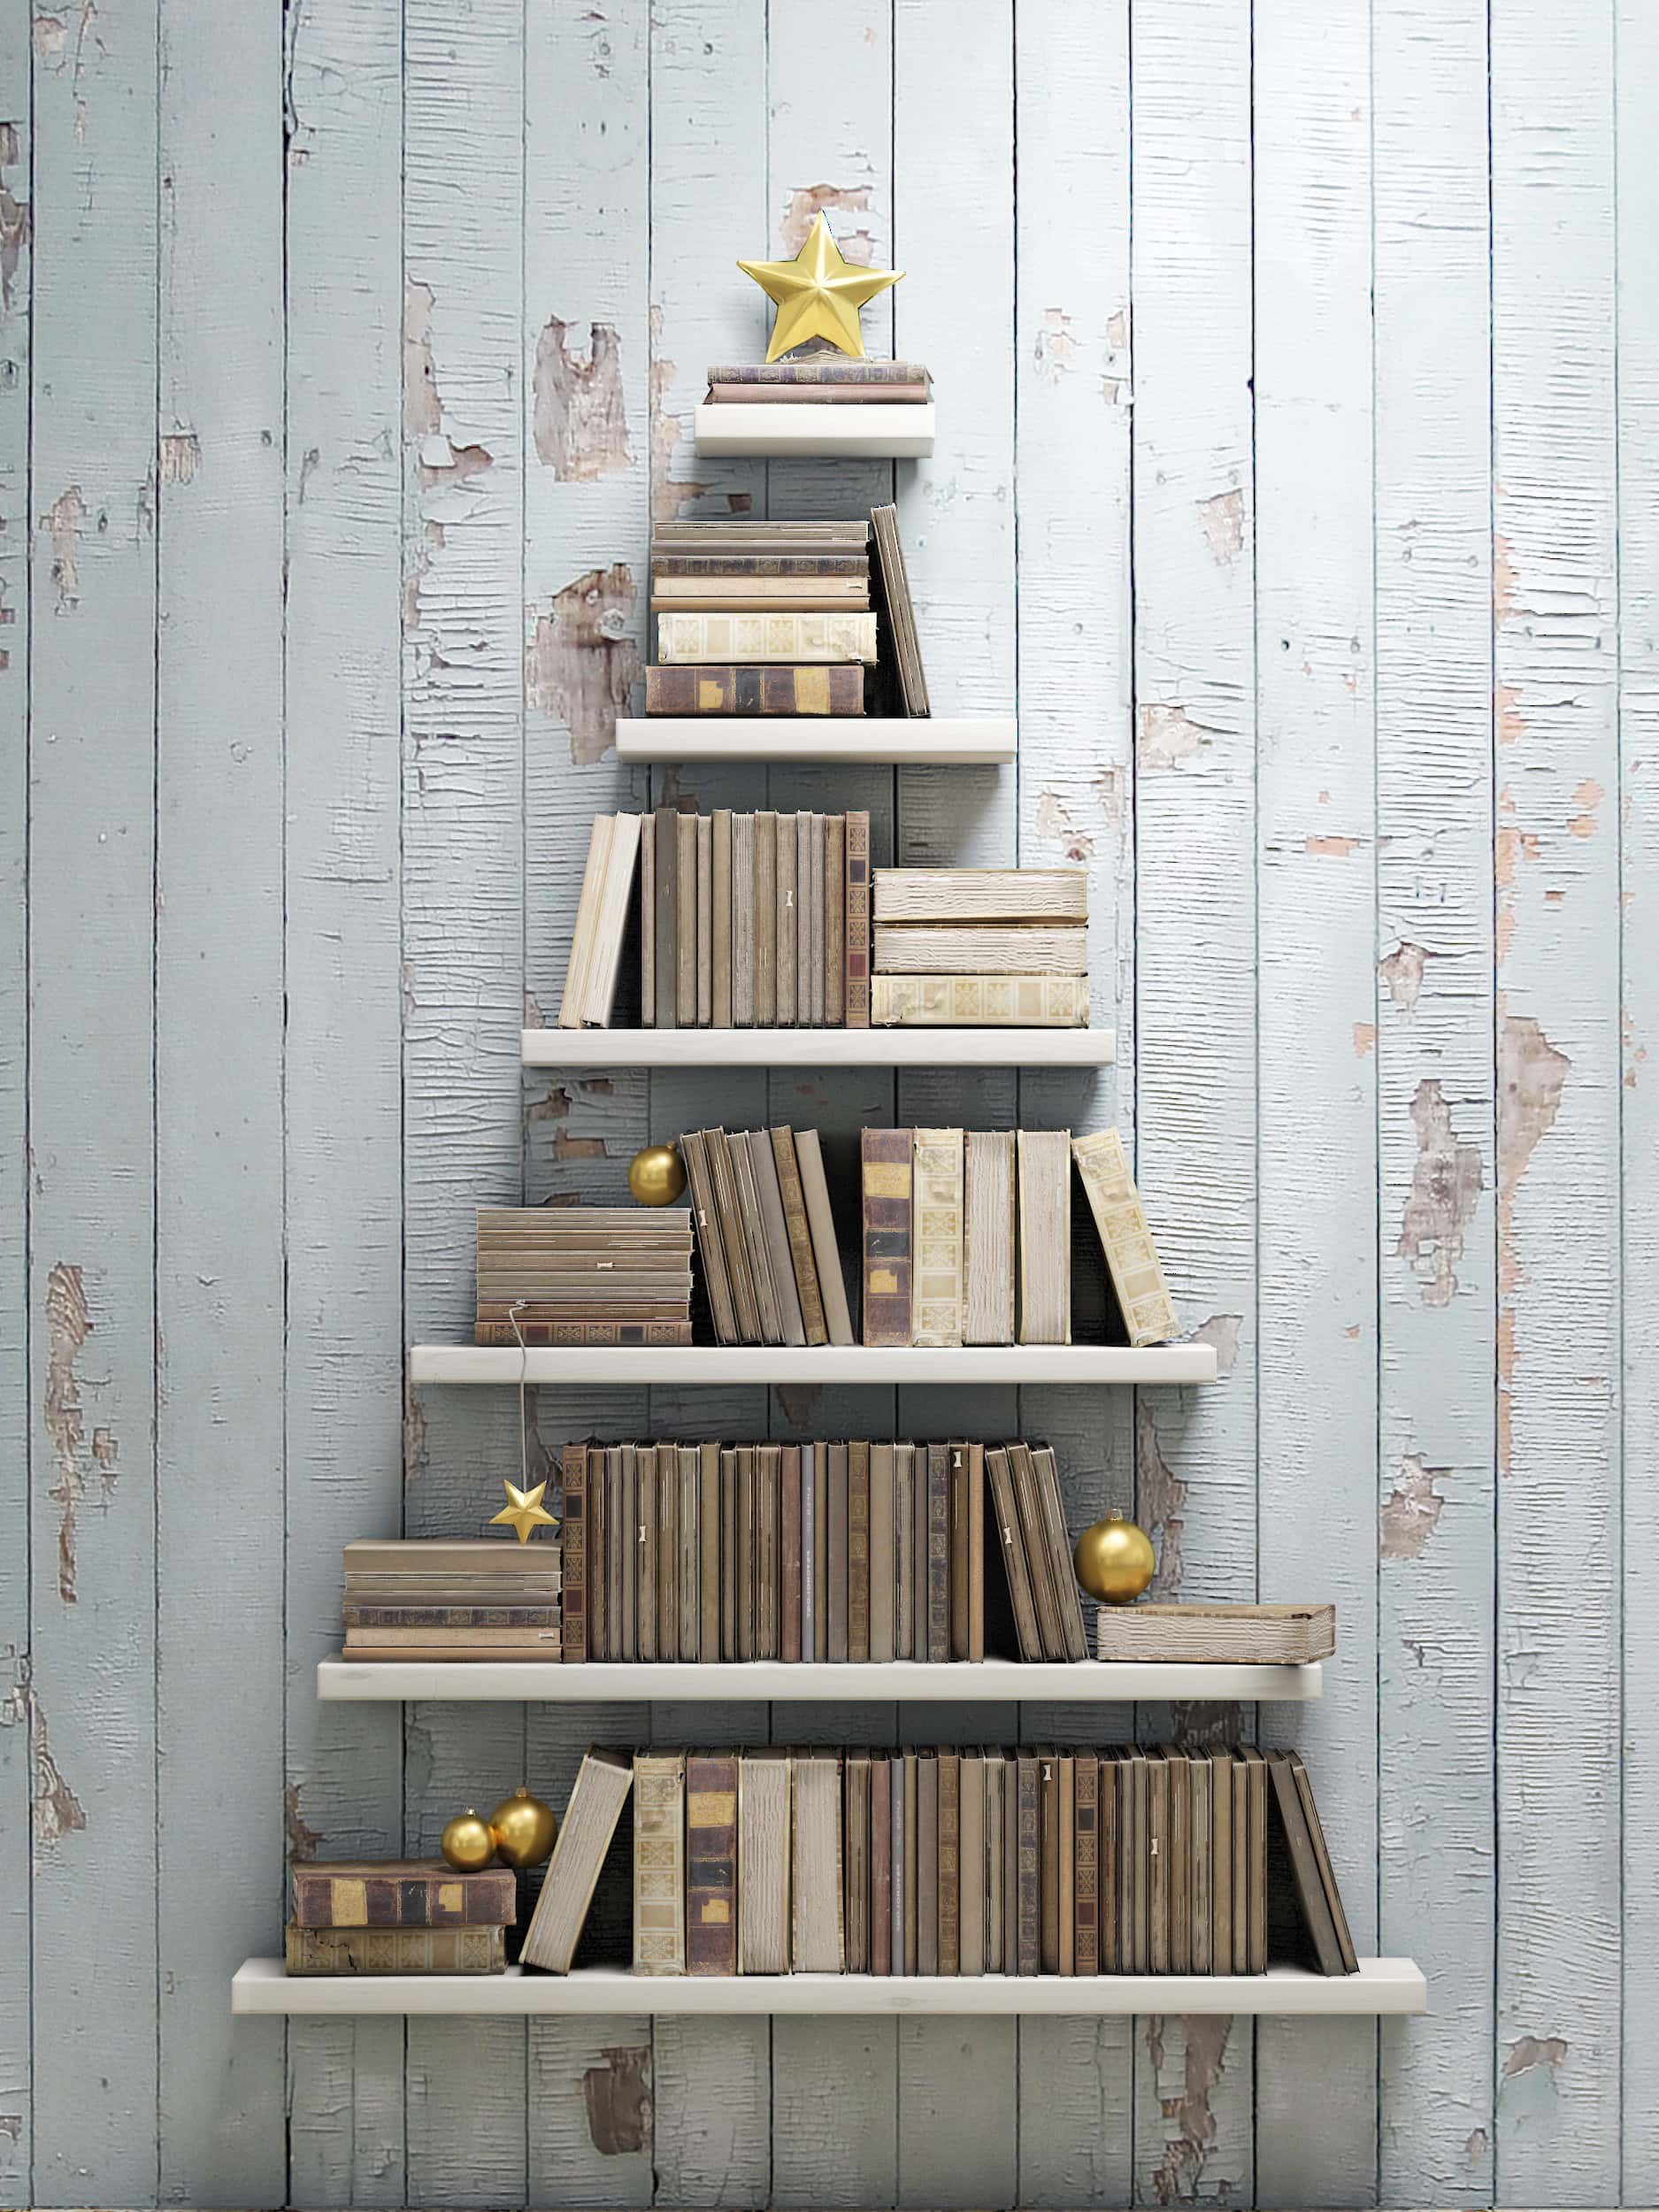 bookshelf inspired from Christmas tree